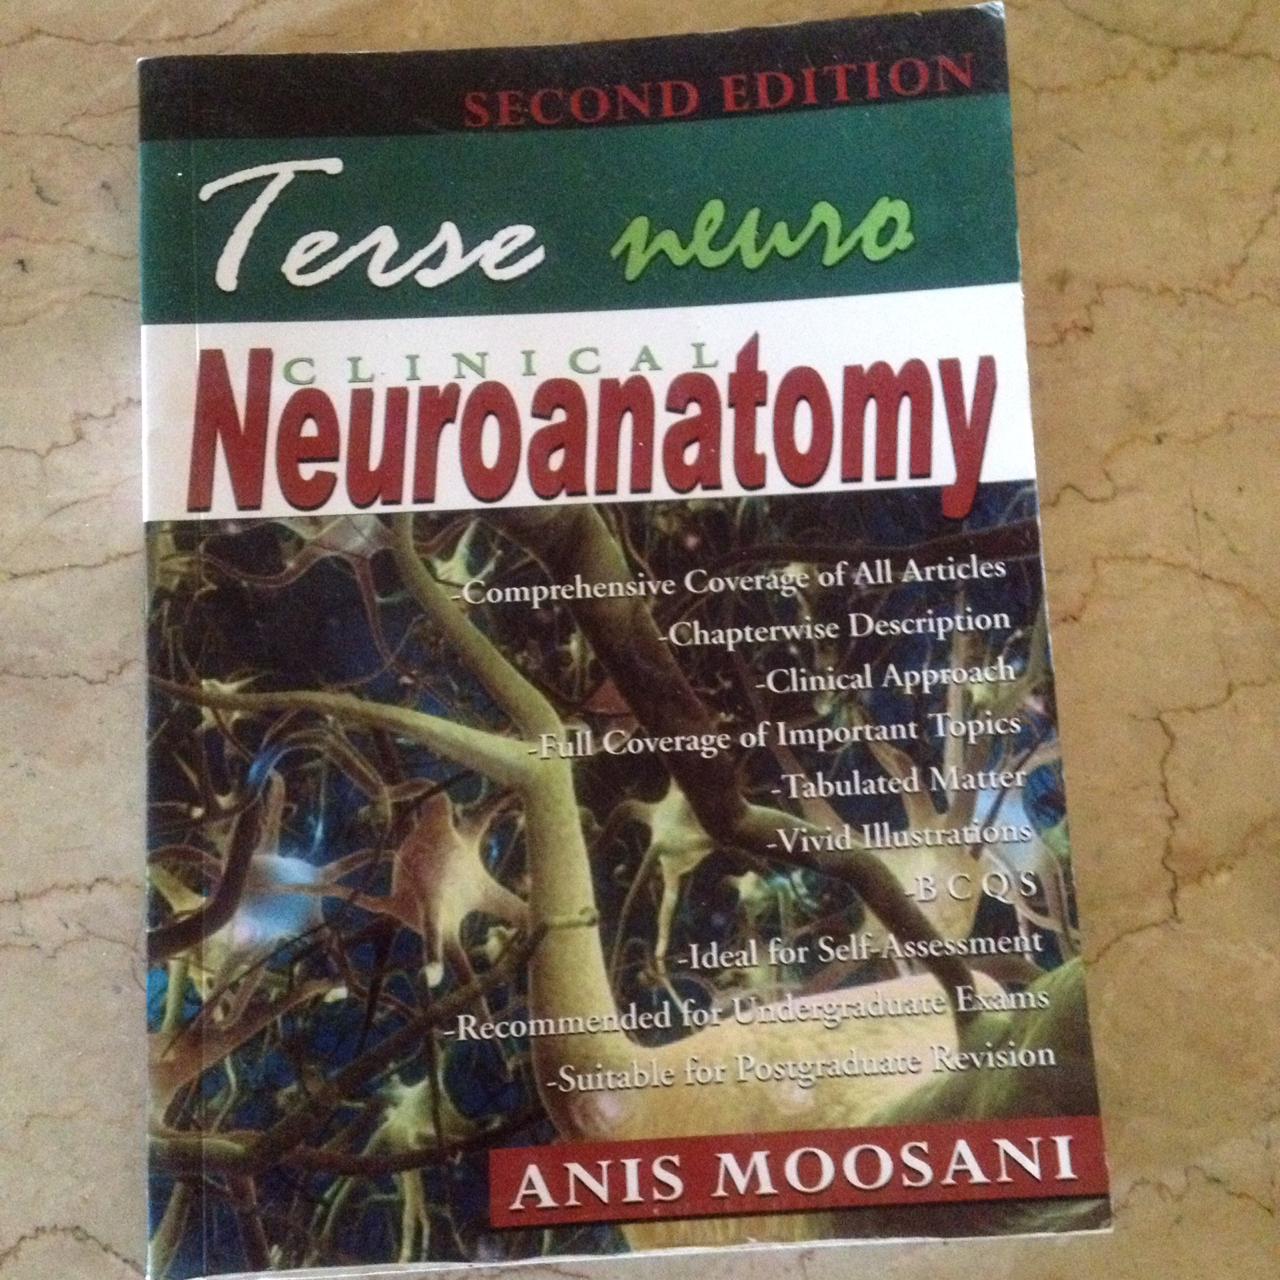 terse neuroanatomy